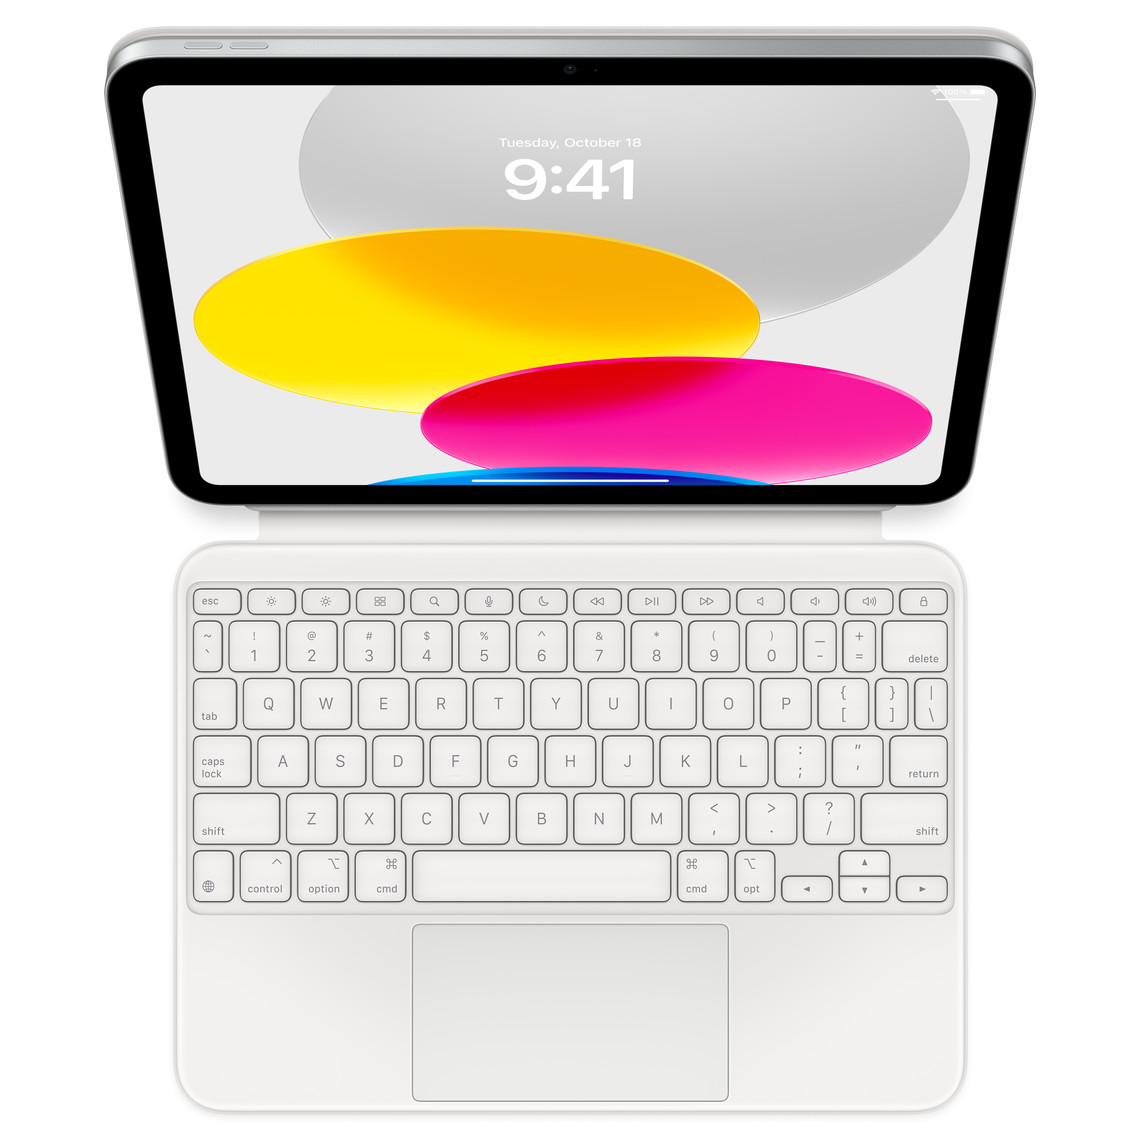 눕혀 놓은 Magic Keyboard Folio에 연결된 iPad Pro를 위에서 내려다본 모습. 여러 색상의 원형 그래픽을 보여주는 화면. 